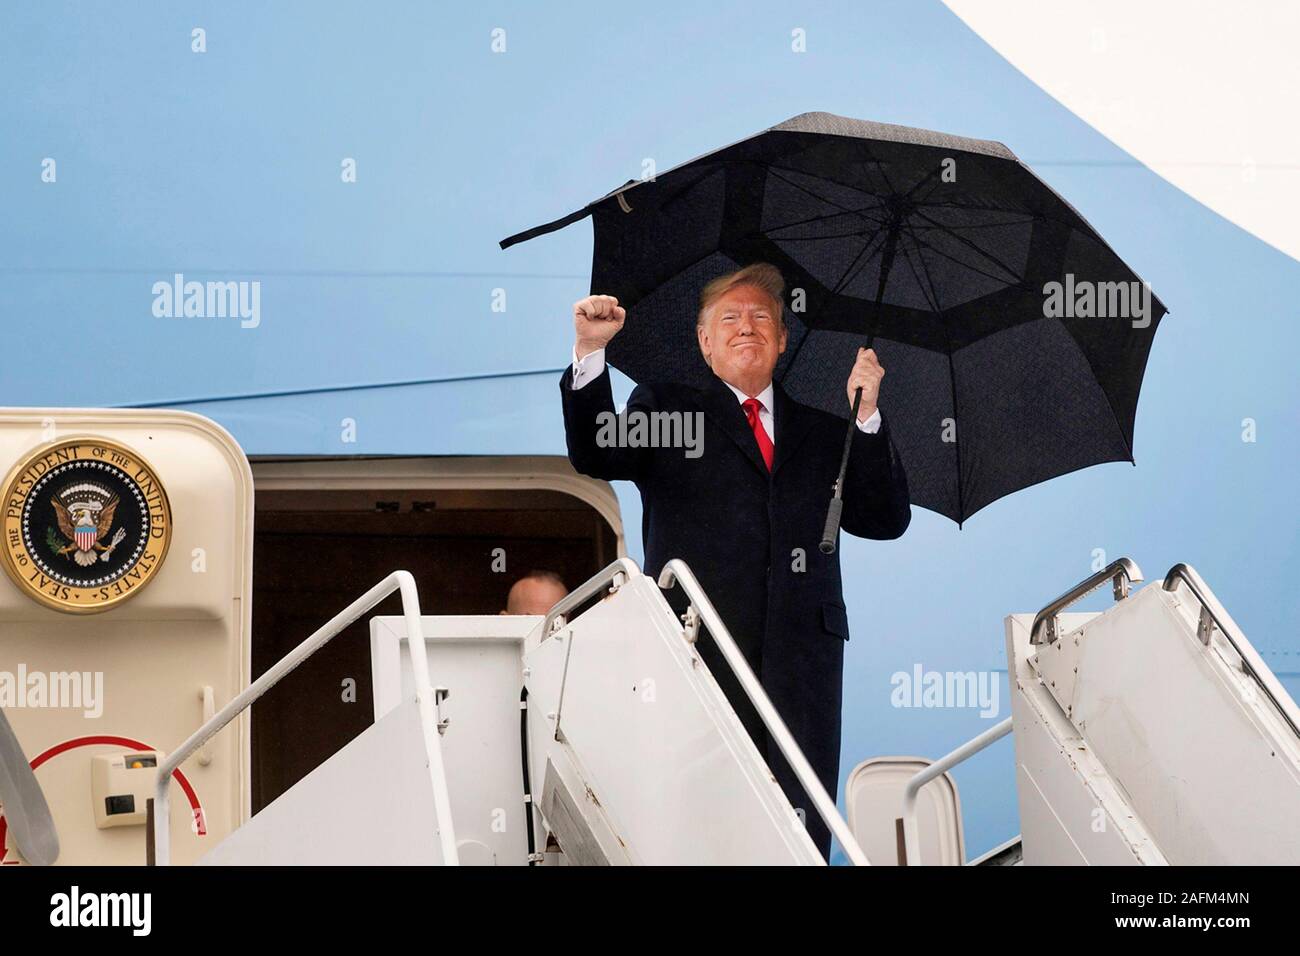 El Presidente de Estados Unidos, Donald bombas su puño como él desembarca en Air Force One a su llegada al Aeropuerto Internacional de Filadelfia para asistir a la 120ª Army-Navy partido de fútbol el 14 de diciembre de 2019 en Filadelfia, Pensilvania. Foto de stock